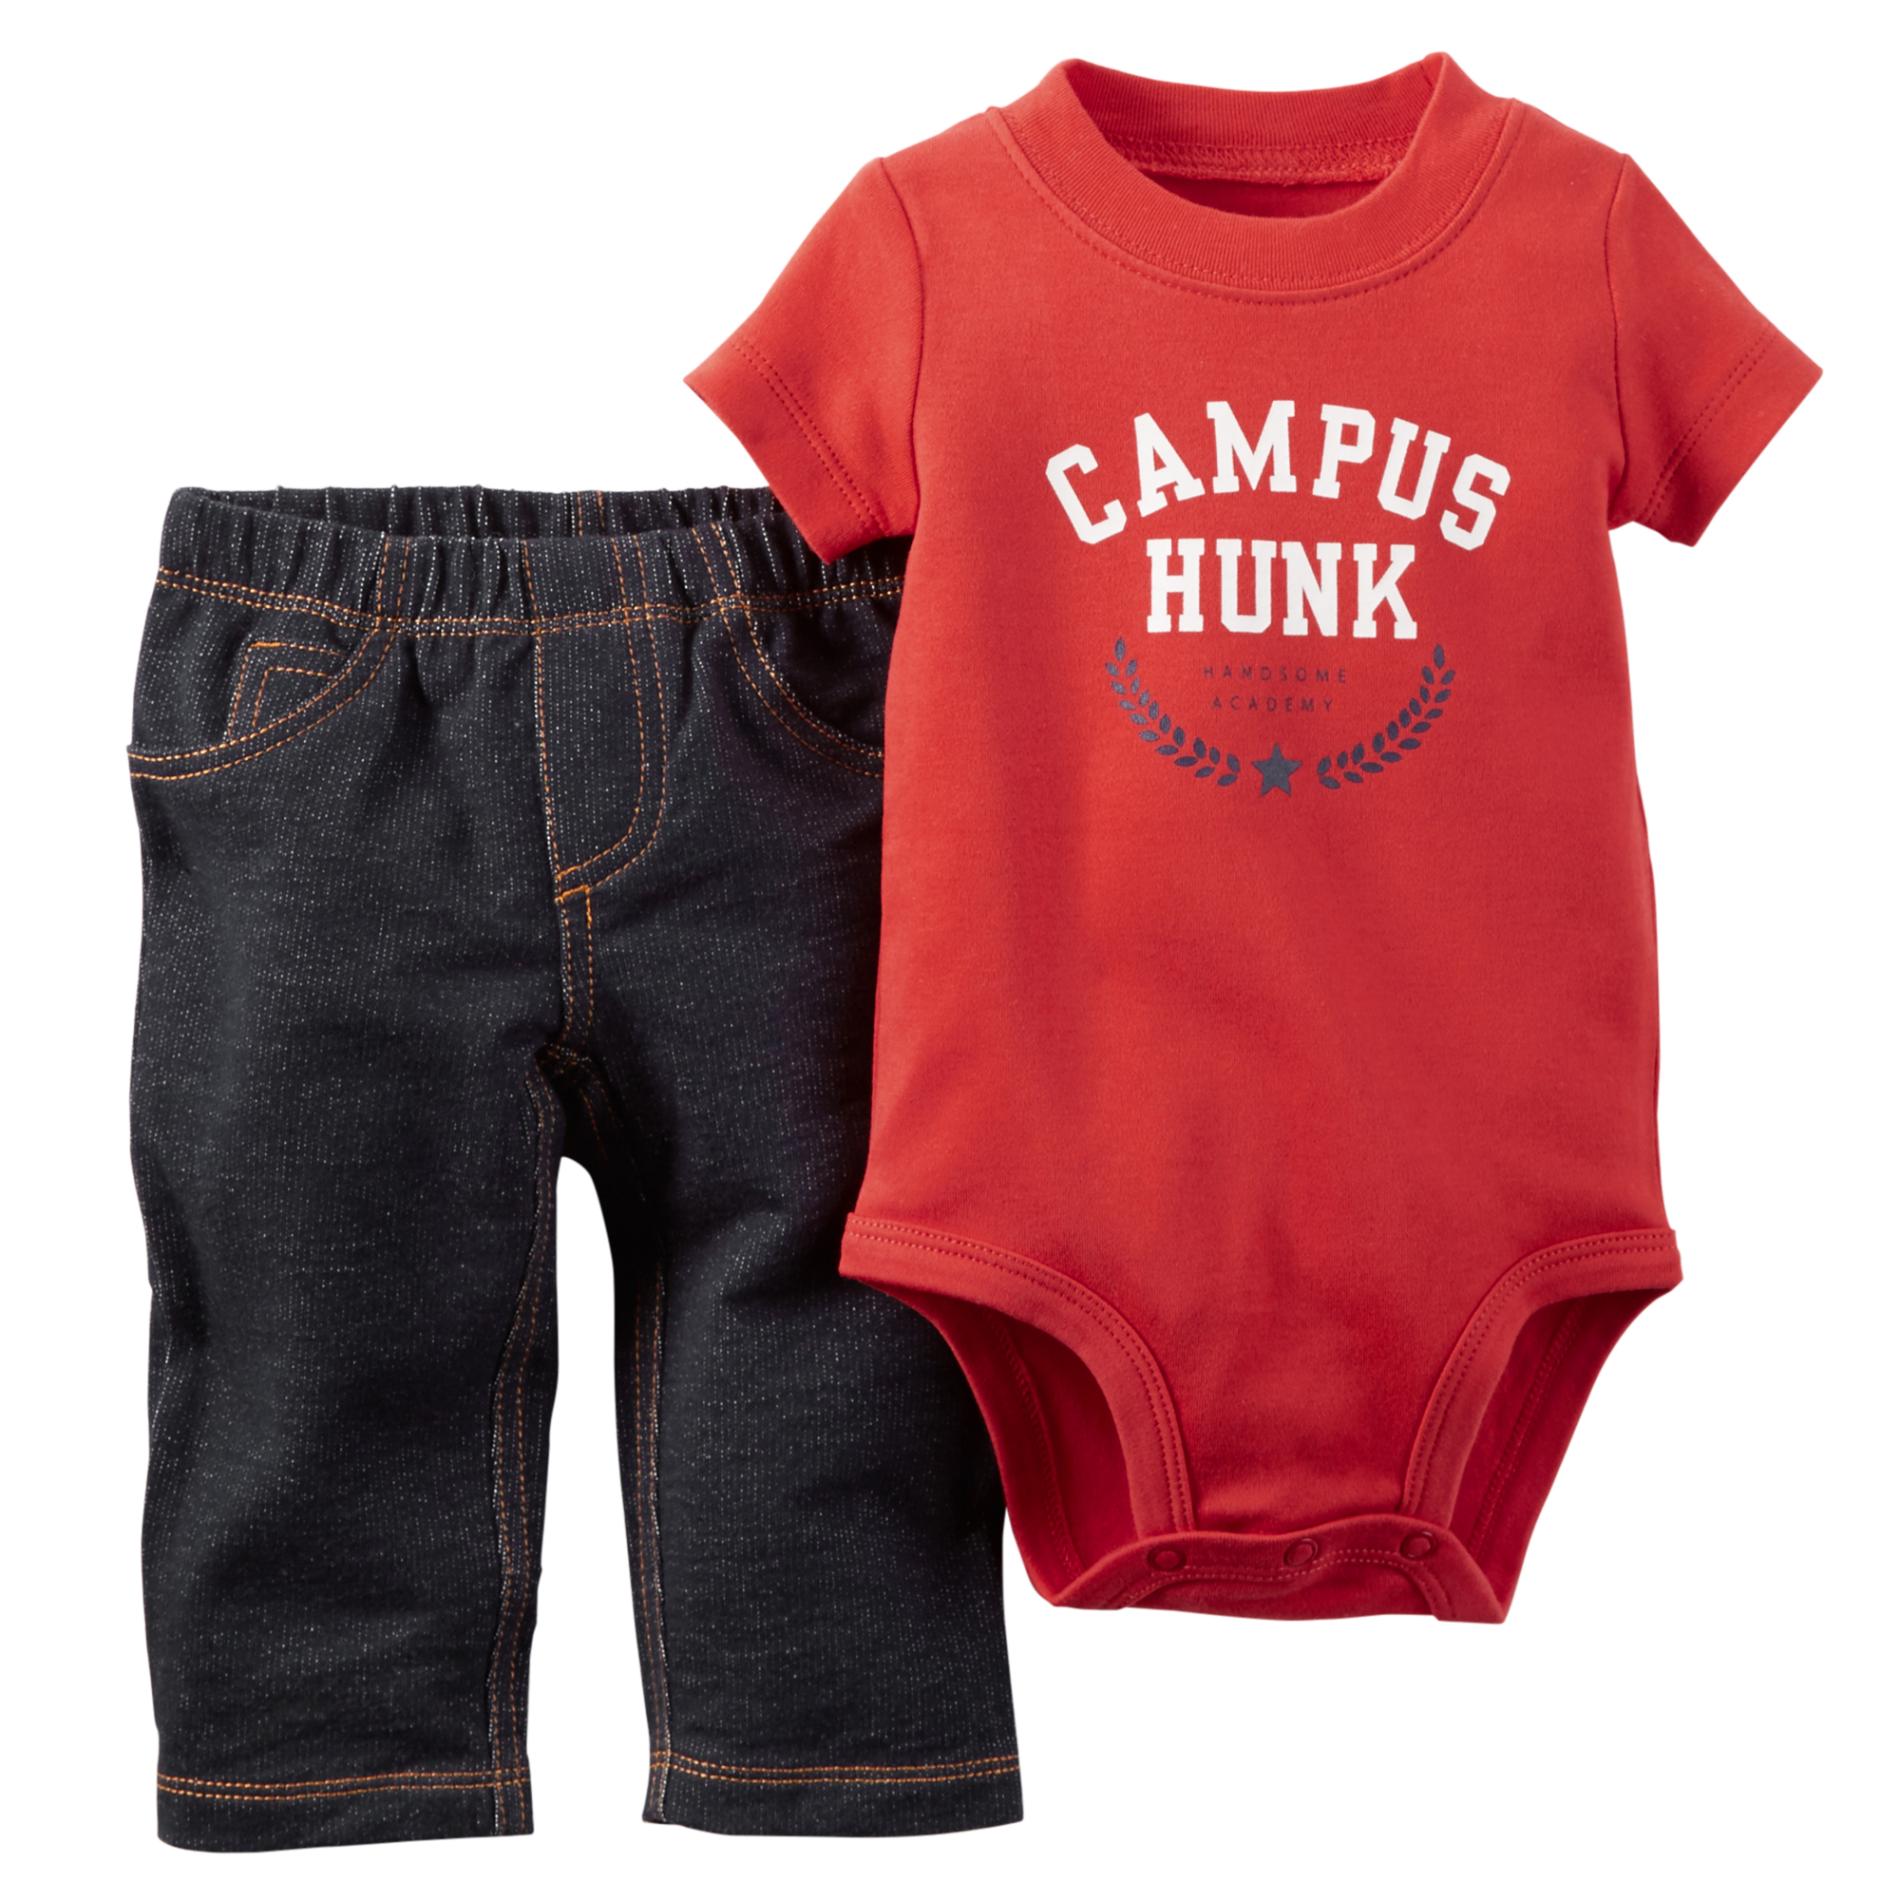 Carter's Newborn & Infant Boy's Bodysuit & Jeans - Campus Hunk